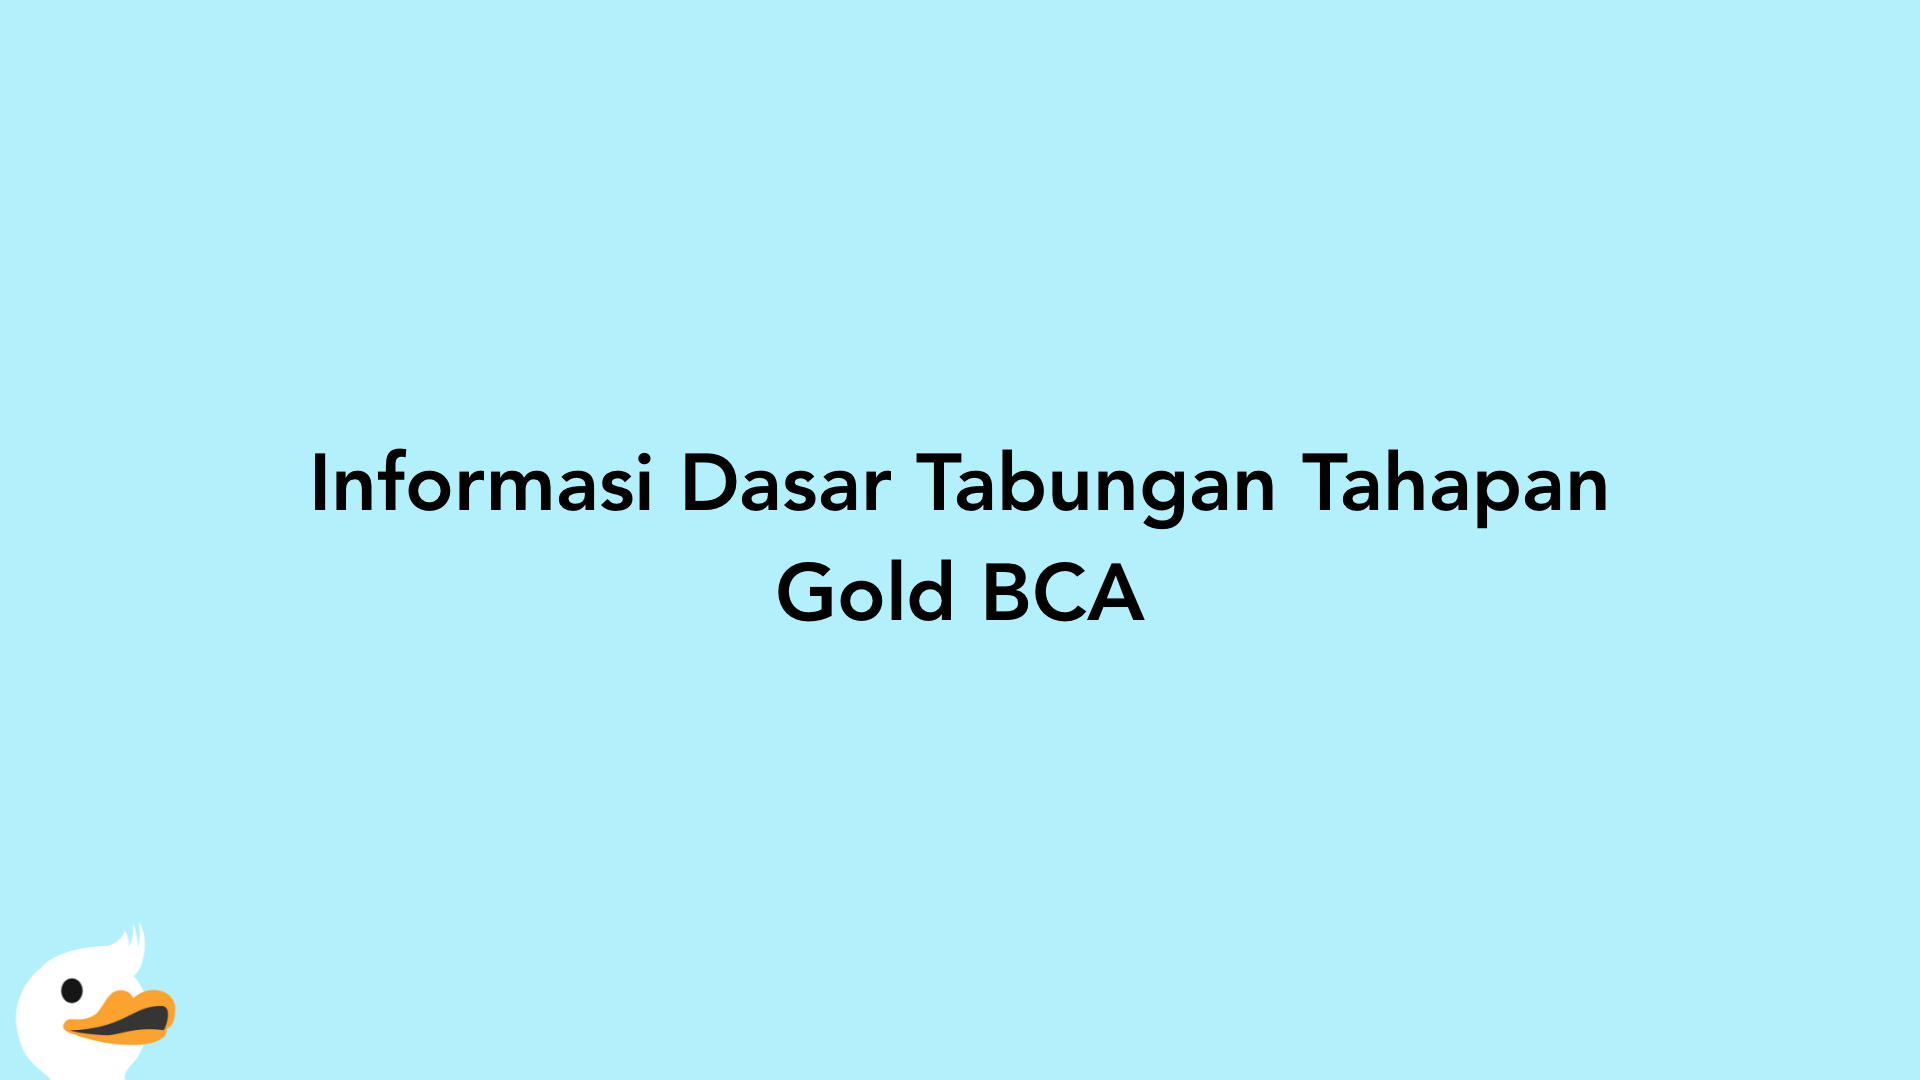 Informasi Dasar Tabungan Tahapan Gold BCA